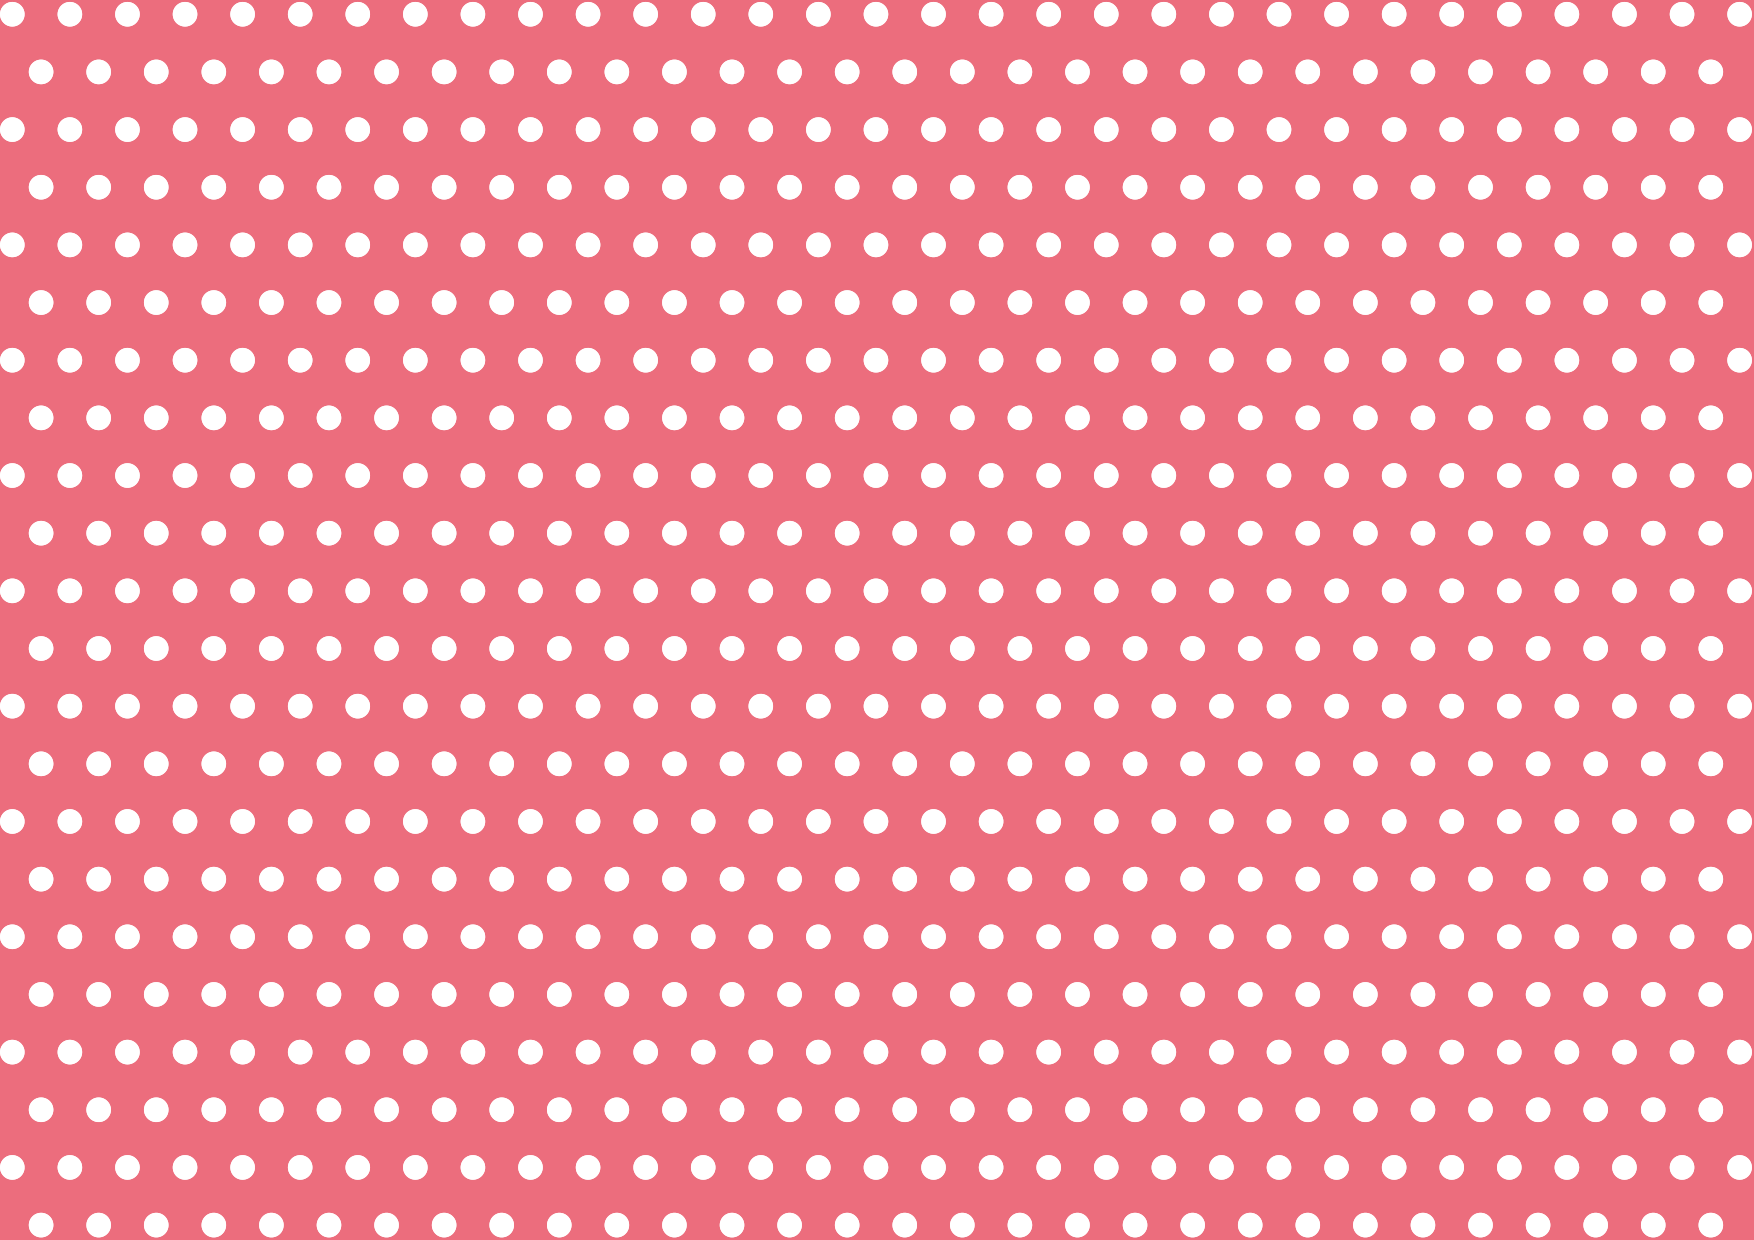 可愛いイラスト無料 水玉 ピンク色 背景 公式 イラストダウンロード